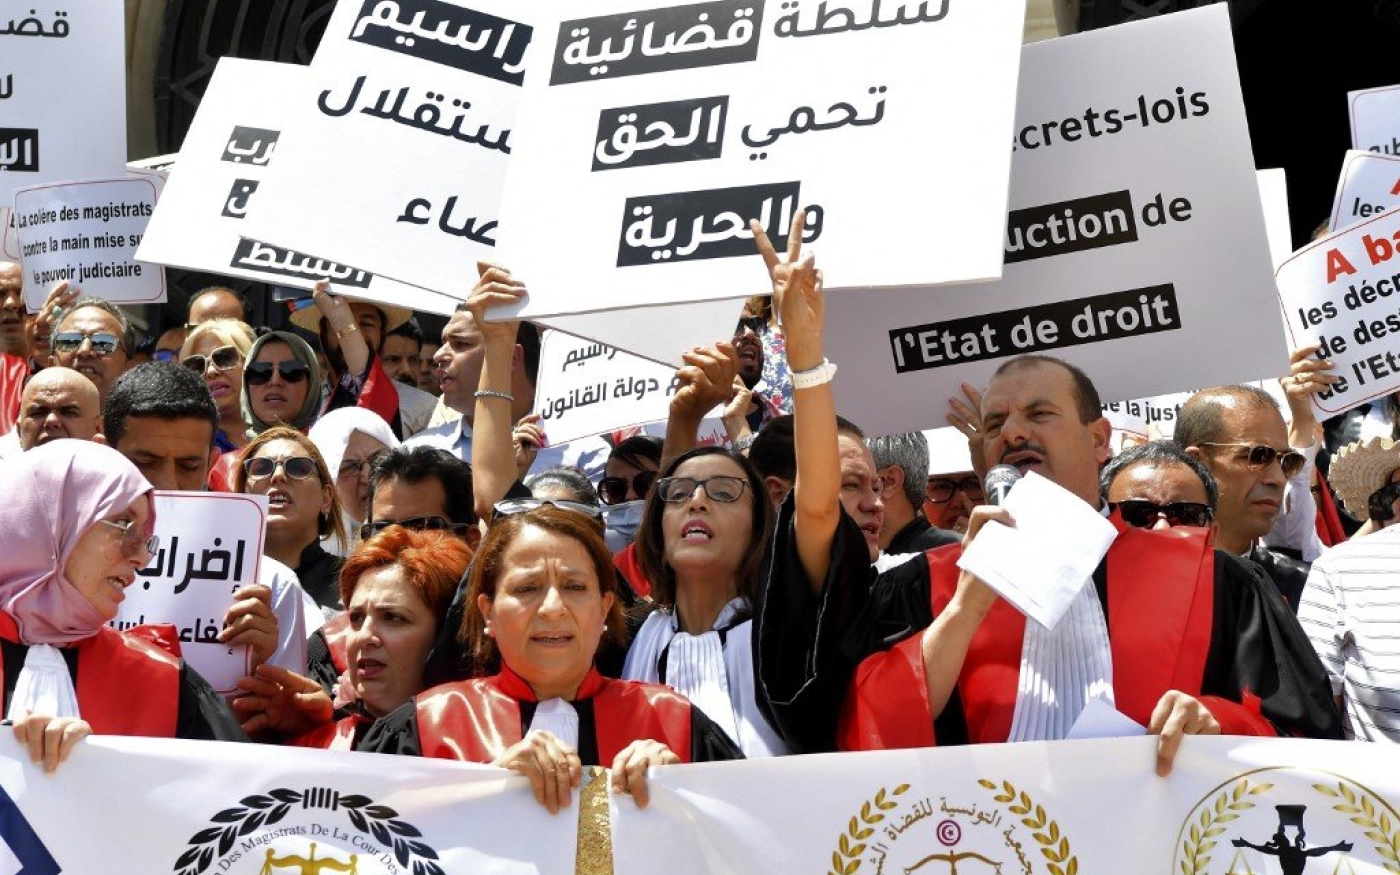 Rassemblement de magistrats pour manifester contre le président tunisien Kais Saied, devant le palais de justice de la capitale tunisienne, le 23 juin 2022 (AFP)